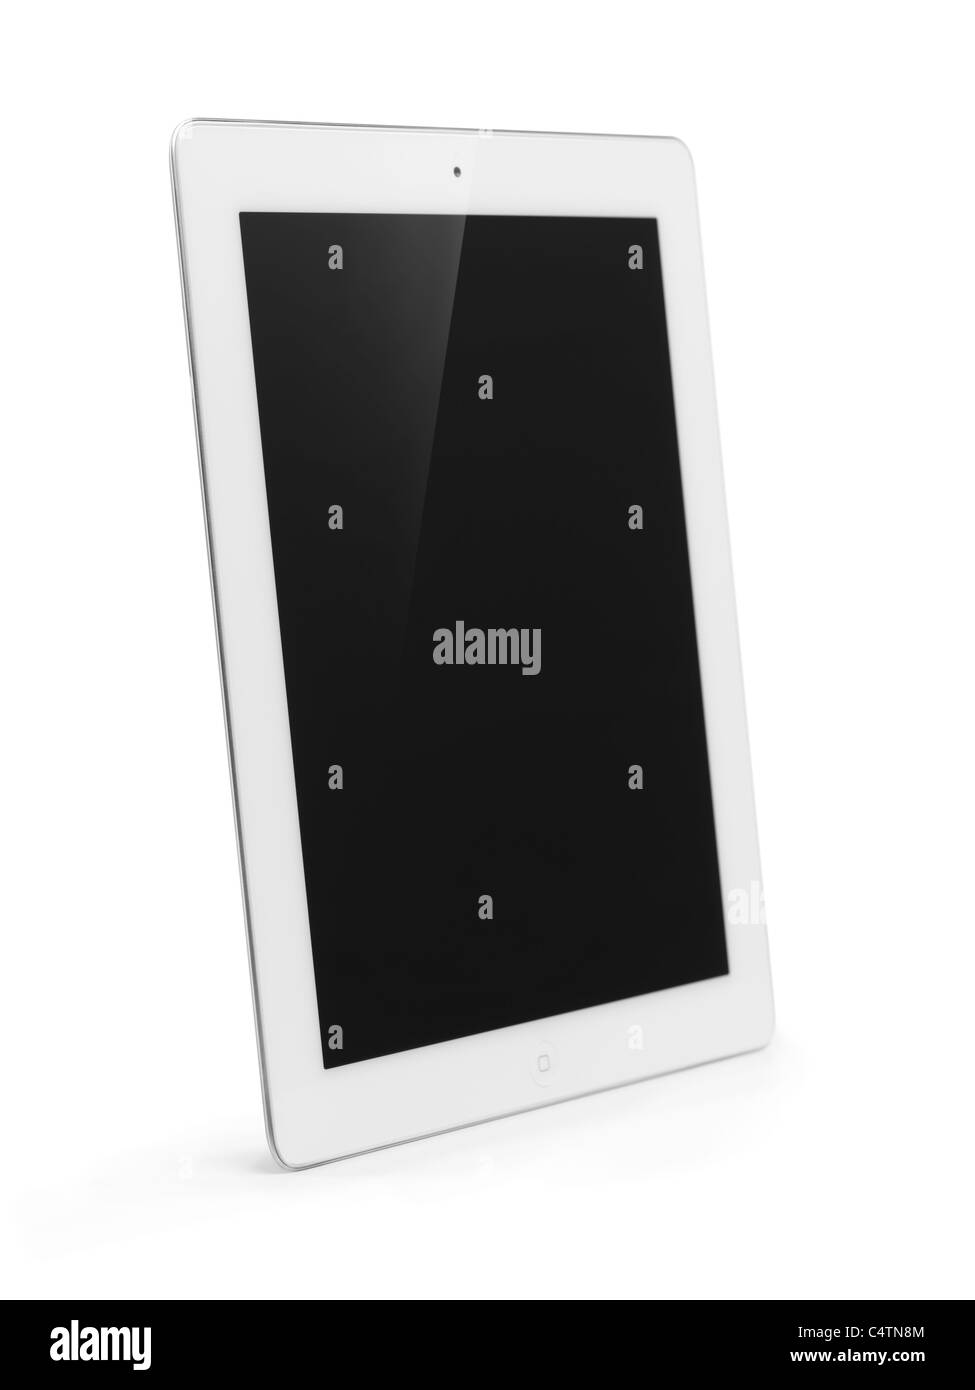 Blanco Apple iPad 2 tablet PC con pantalla en blanco. Con trazado de recorte aislado sobre fondo blanco. Foto de stock